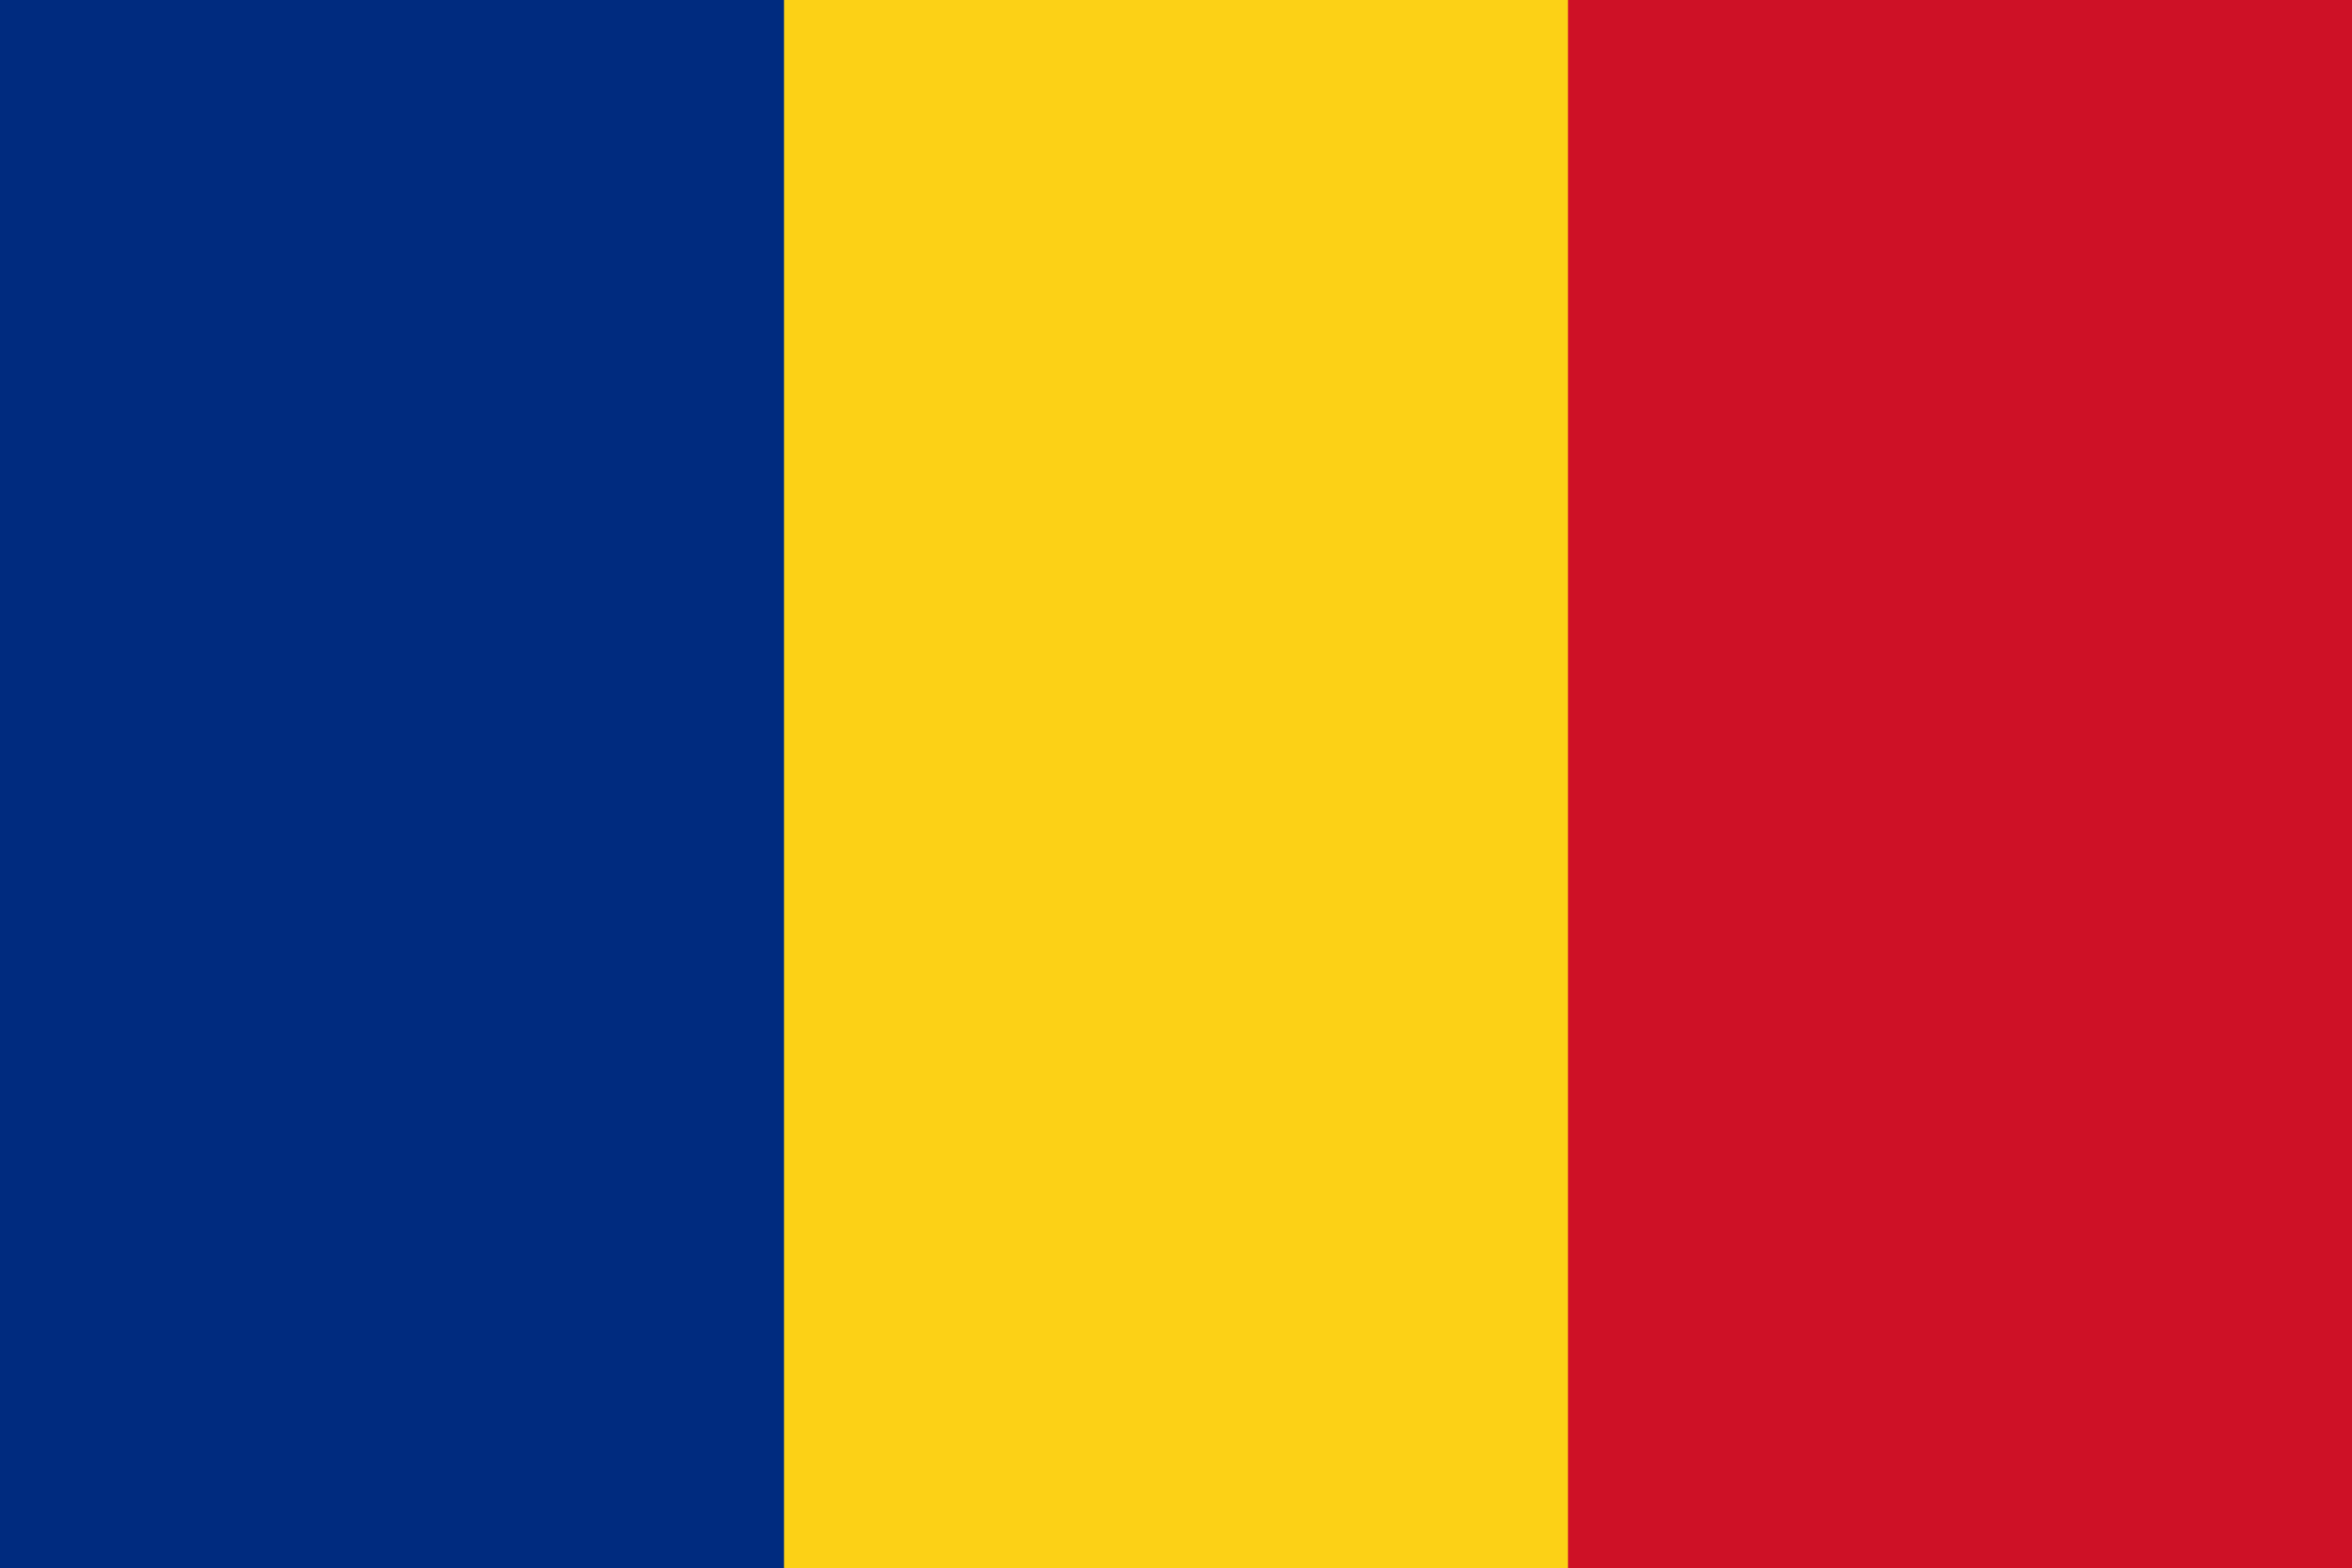 Quốc kỳ Romania